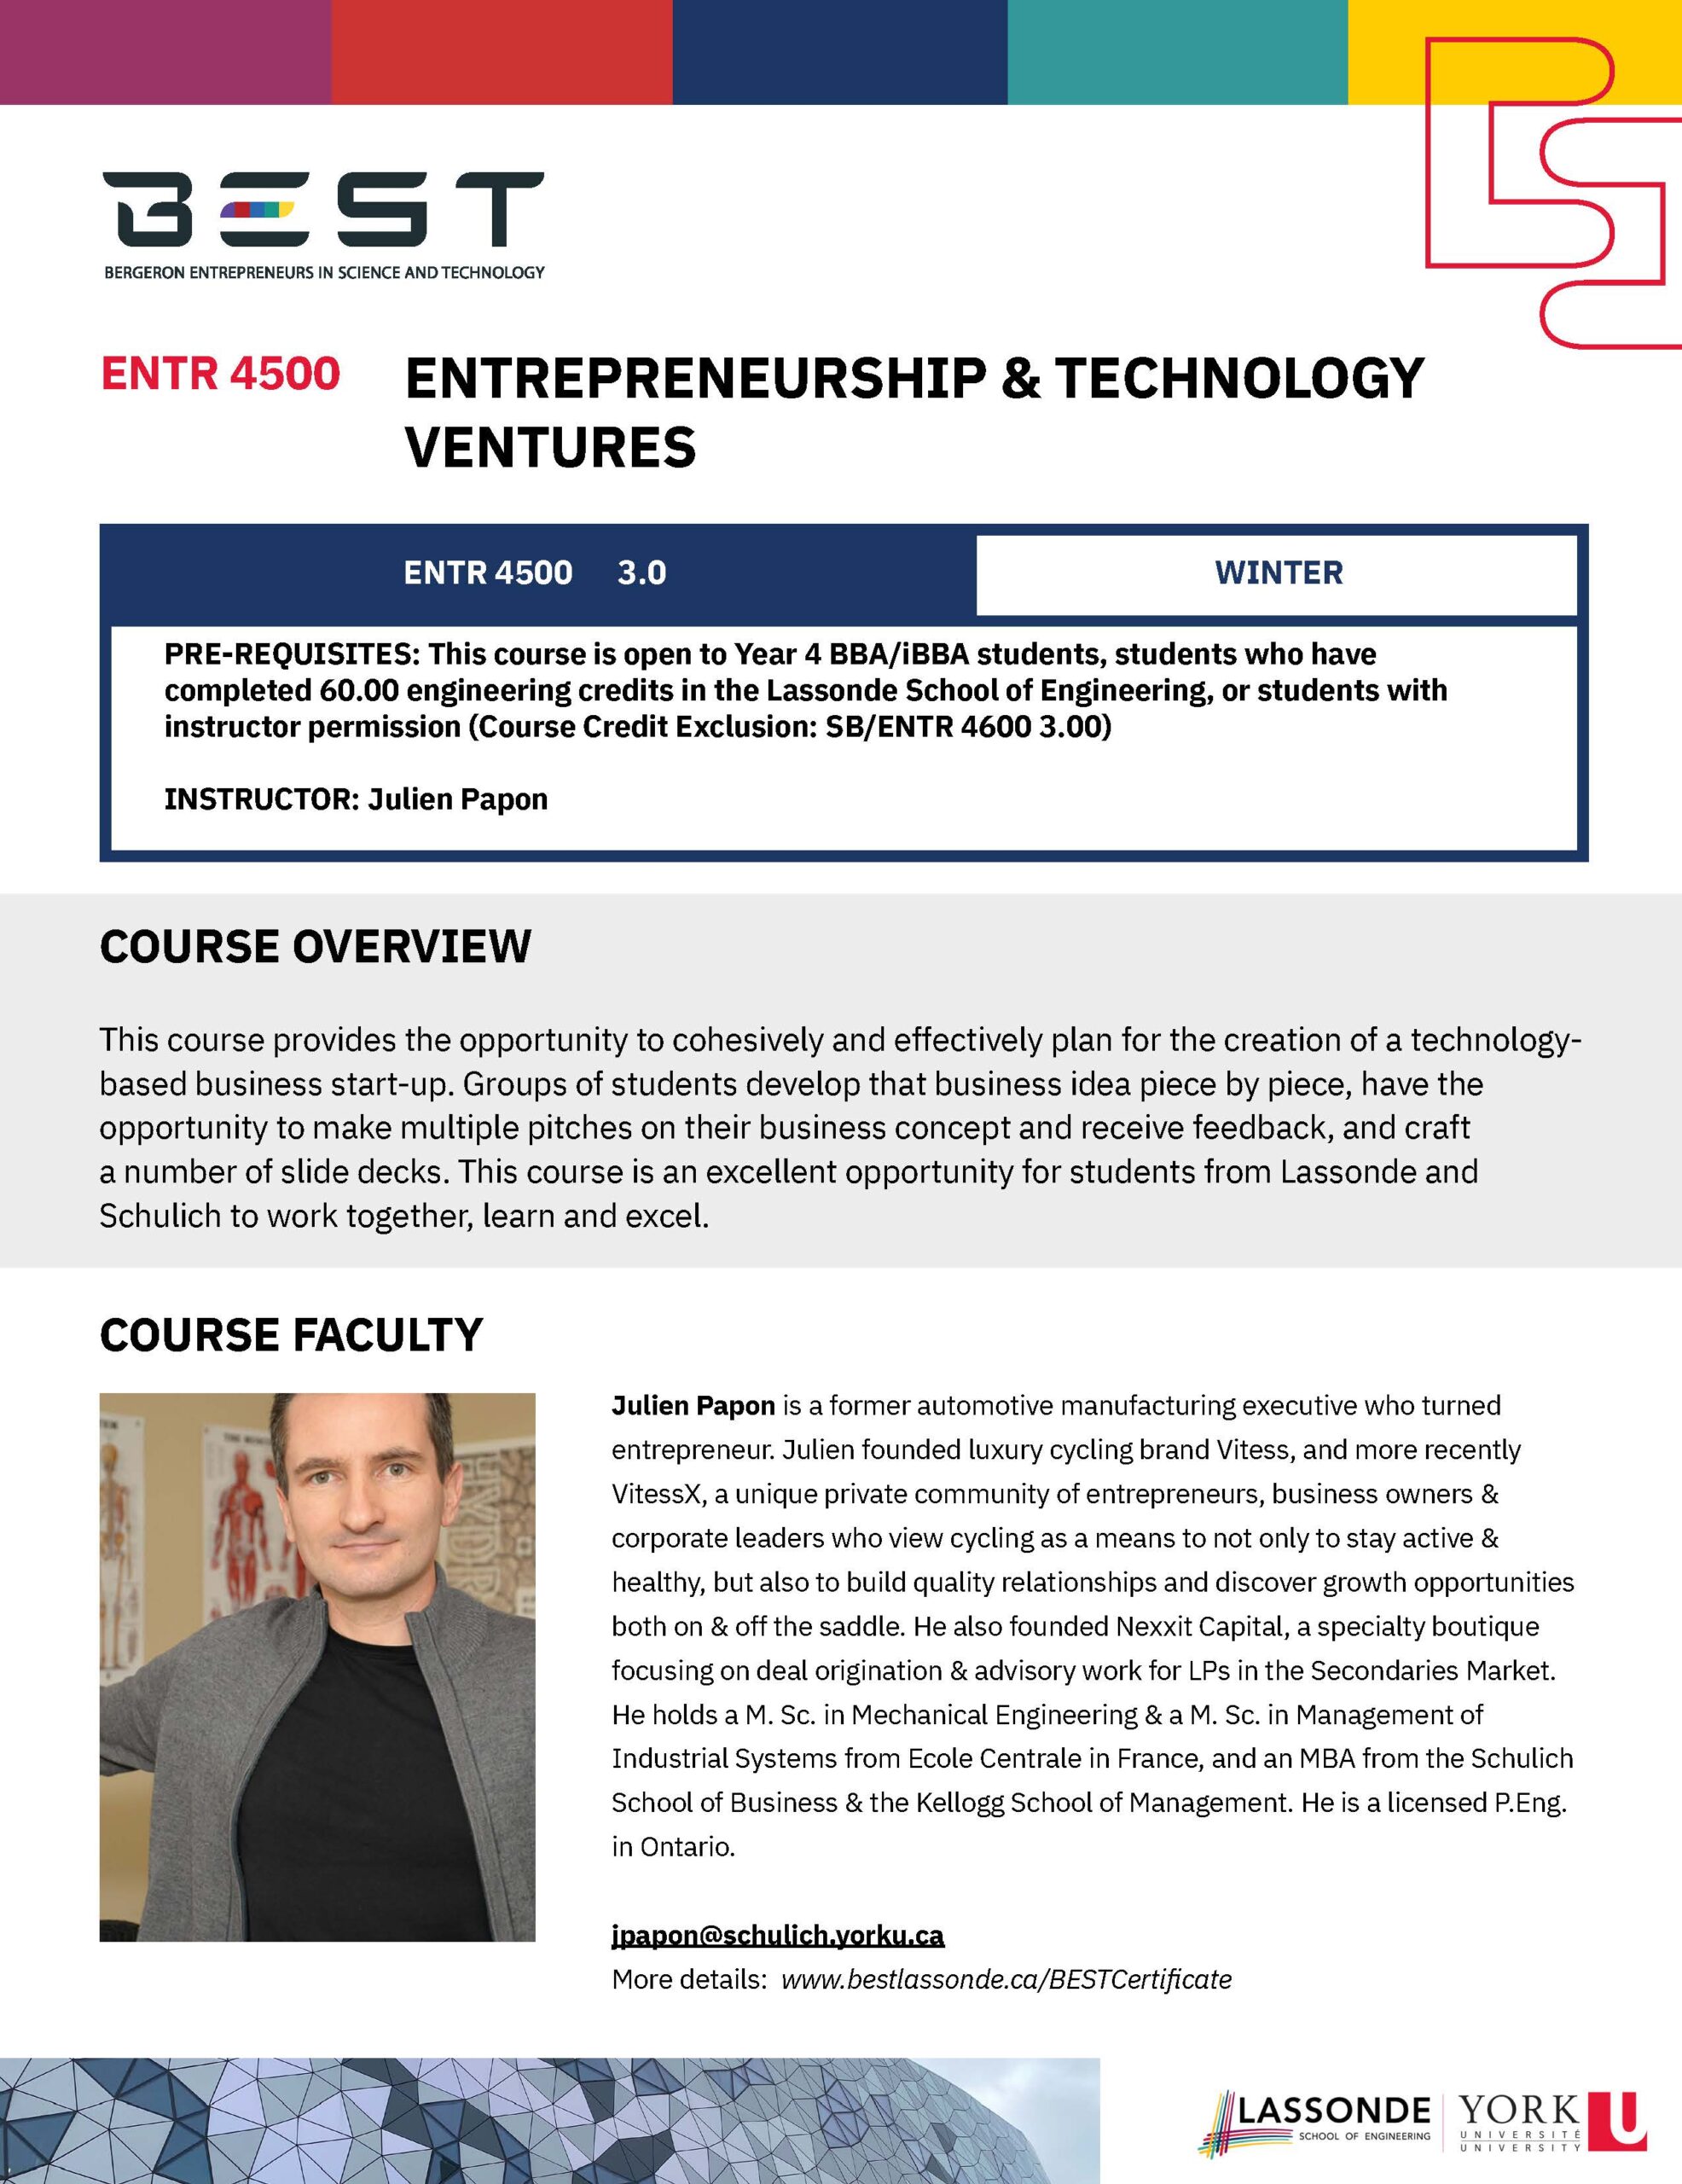 ENTR 4500
Entrepreneurship & Technology Ventures (poster)